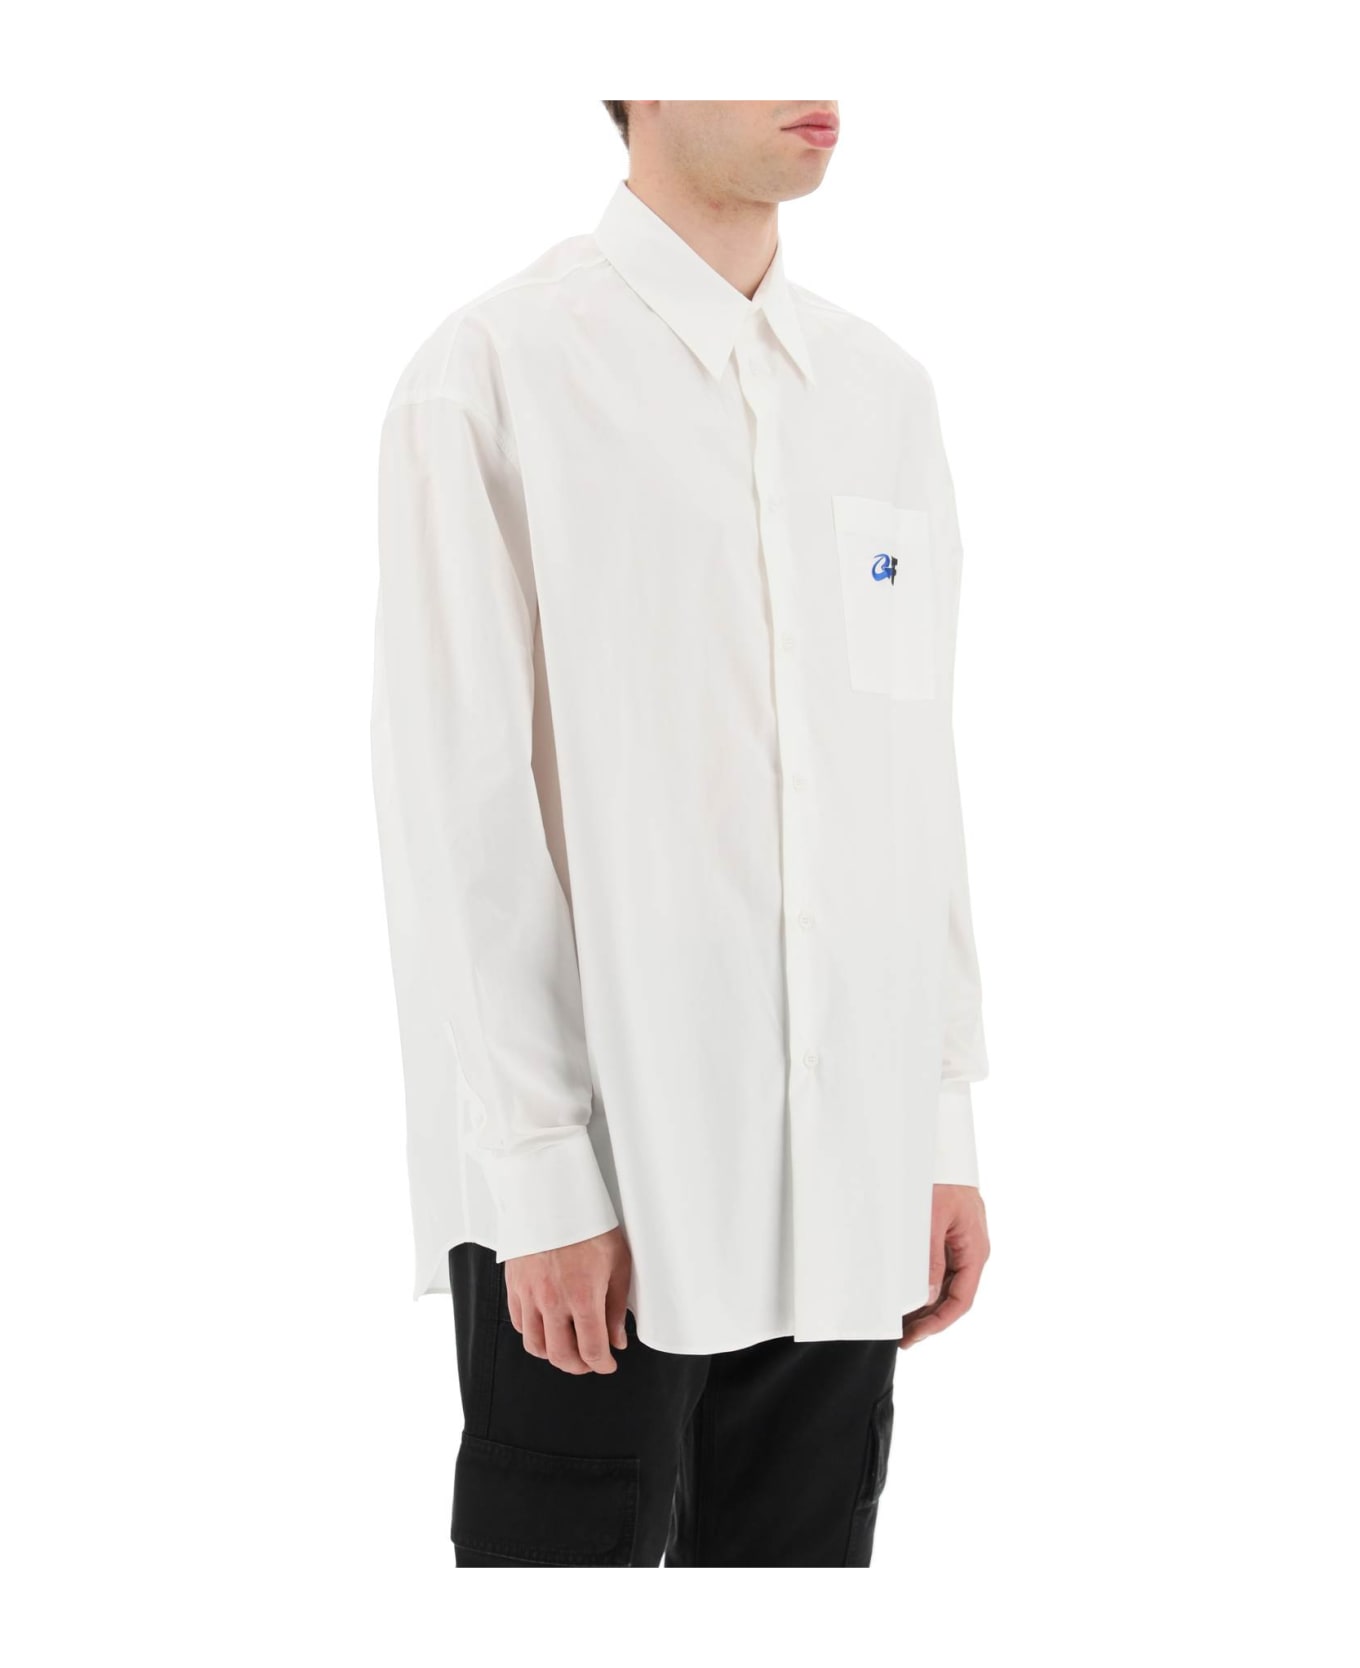 Off-White Exact Opposite Cotton Overshirt - WHITE BLACK (White)